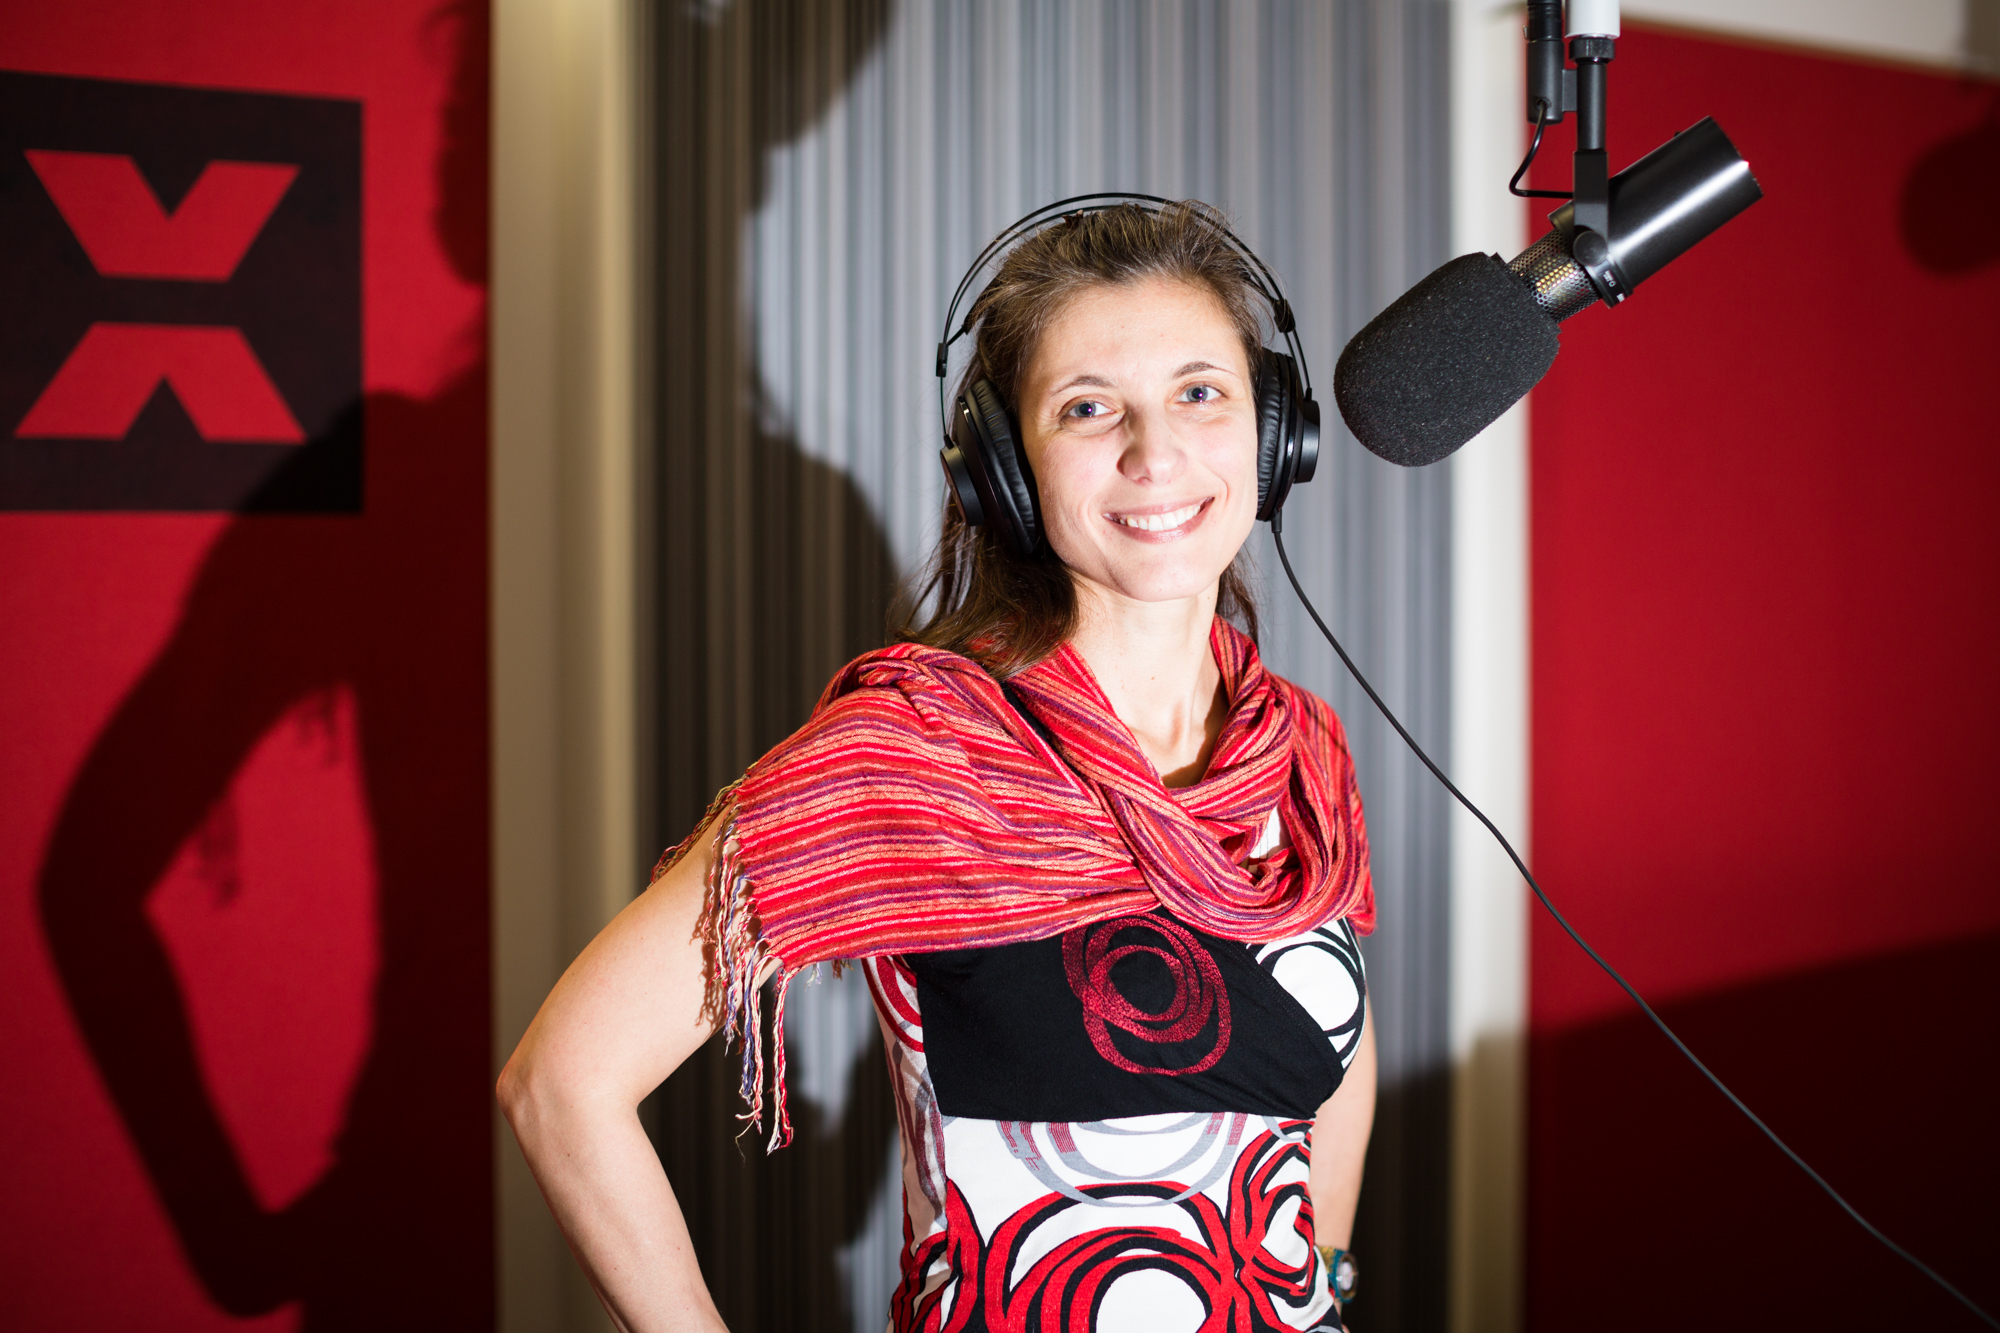 Kopfhörer auf!: Debora Cilli im Studio von Radio X.